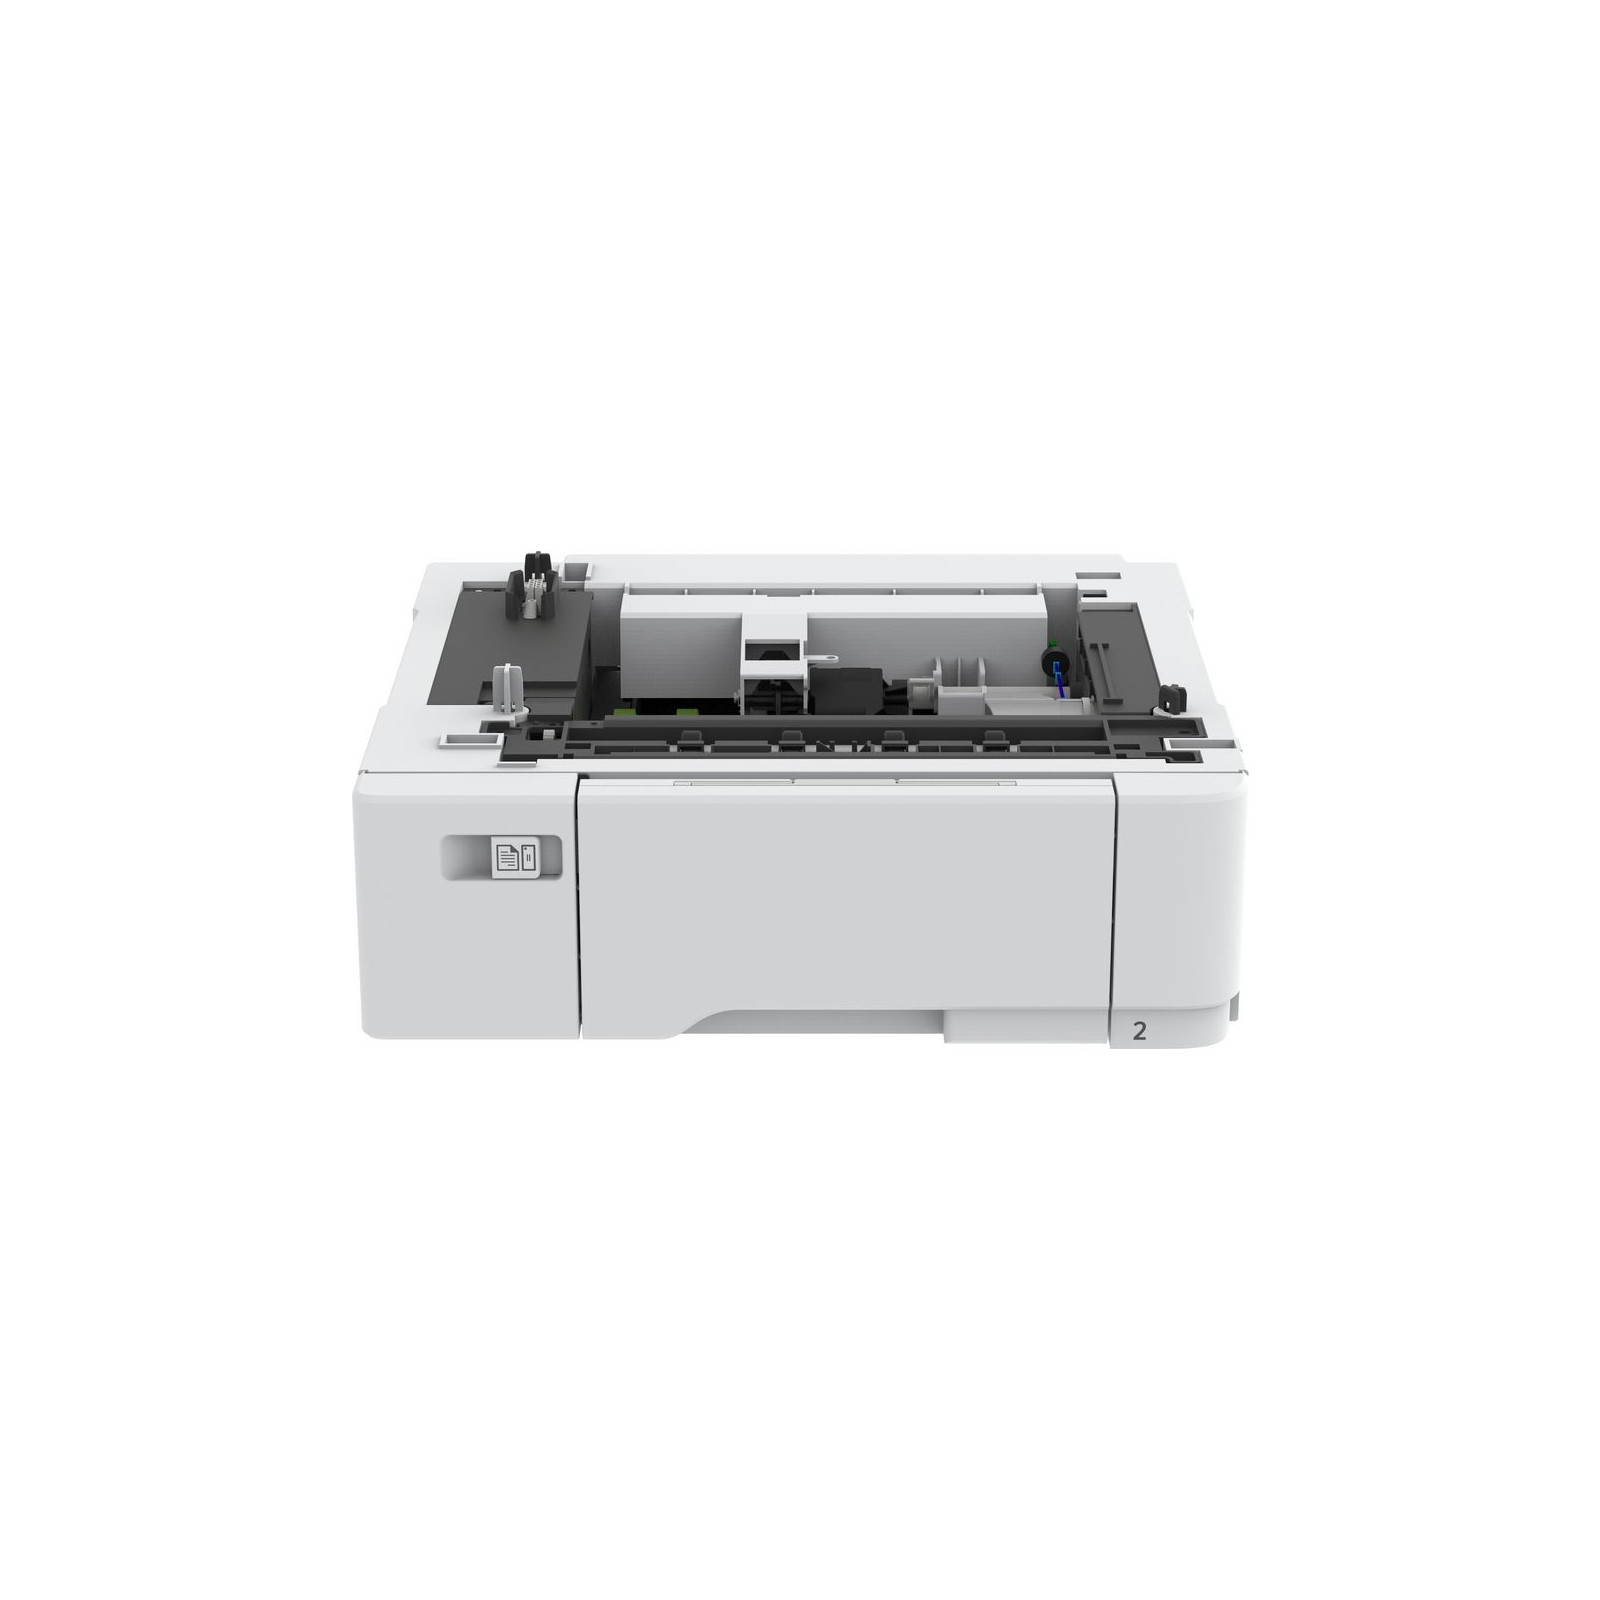 Додаткове обладнання Xerox лоток для принтеру C310/C315 (497N07995)